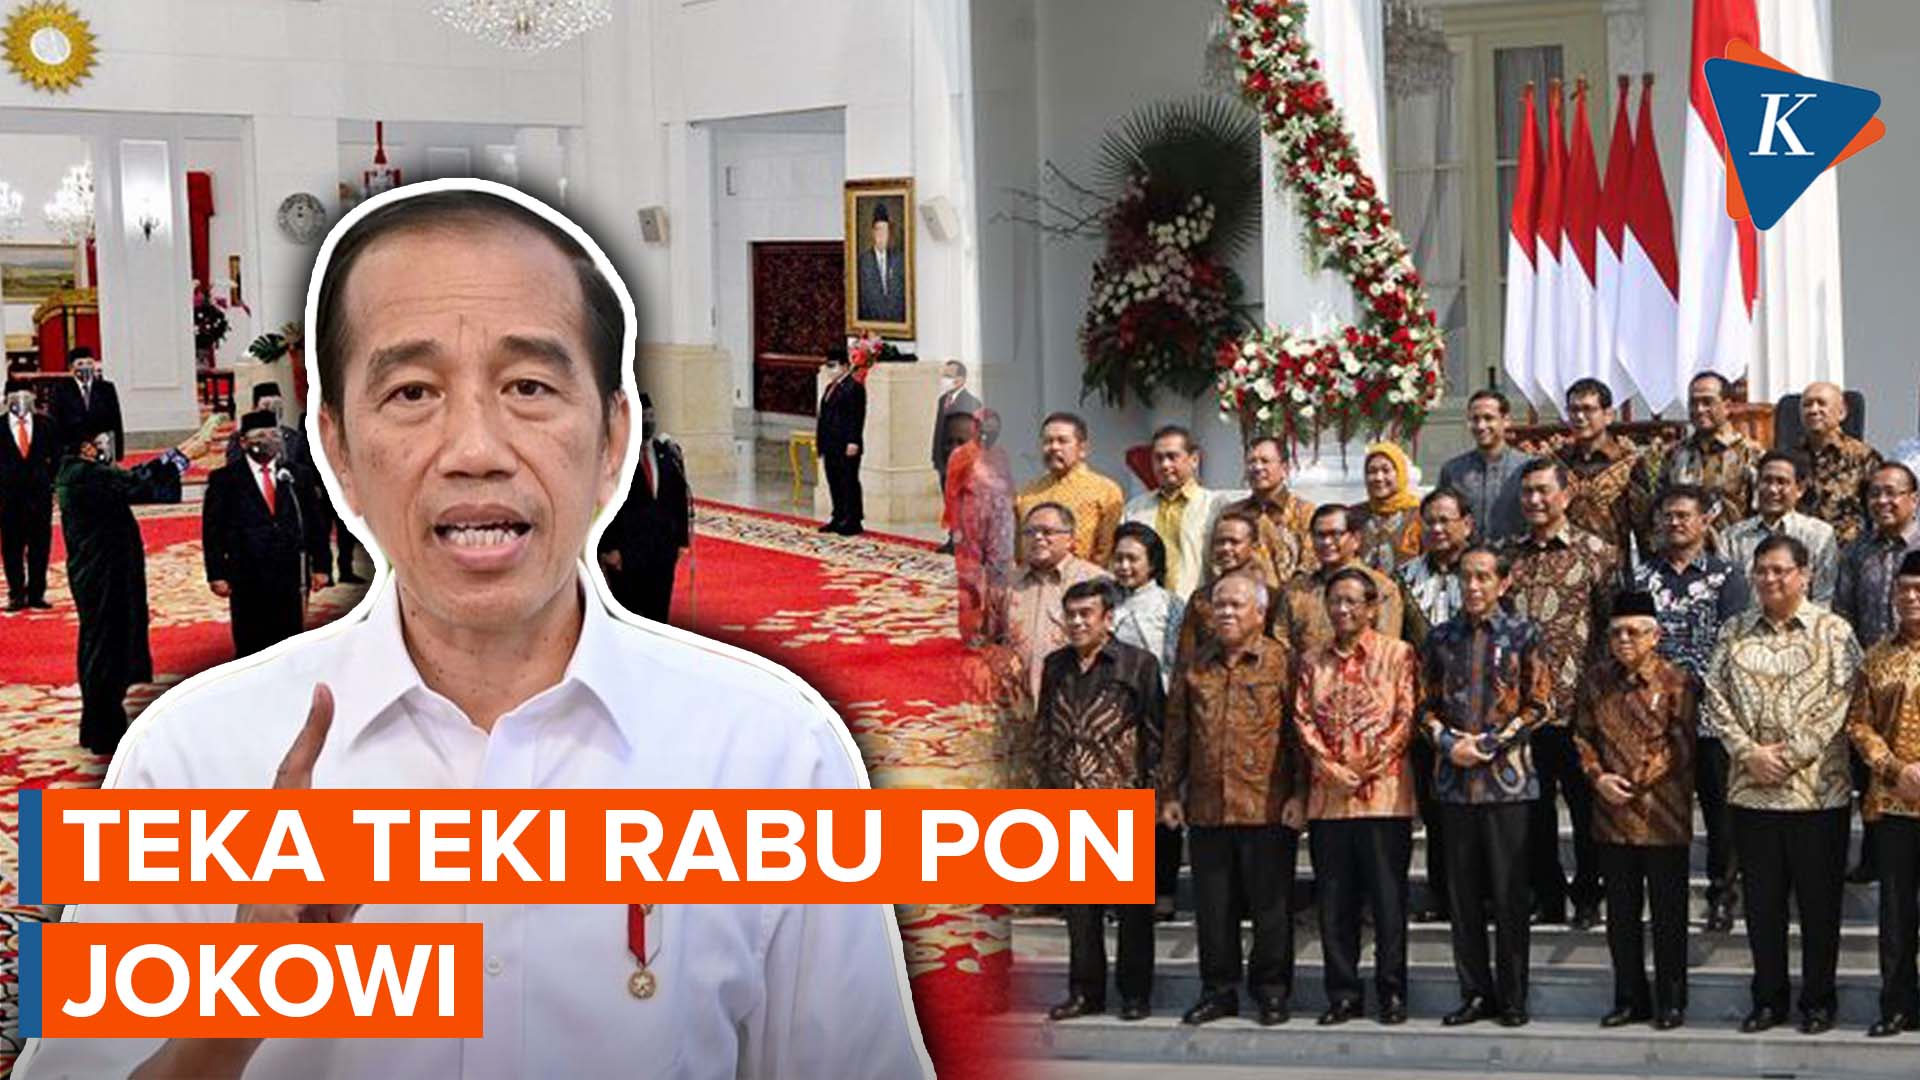 Kode Jokowi soal Rabu Pon dan Reshuffle Kabinet yang Urung Terjadi